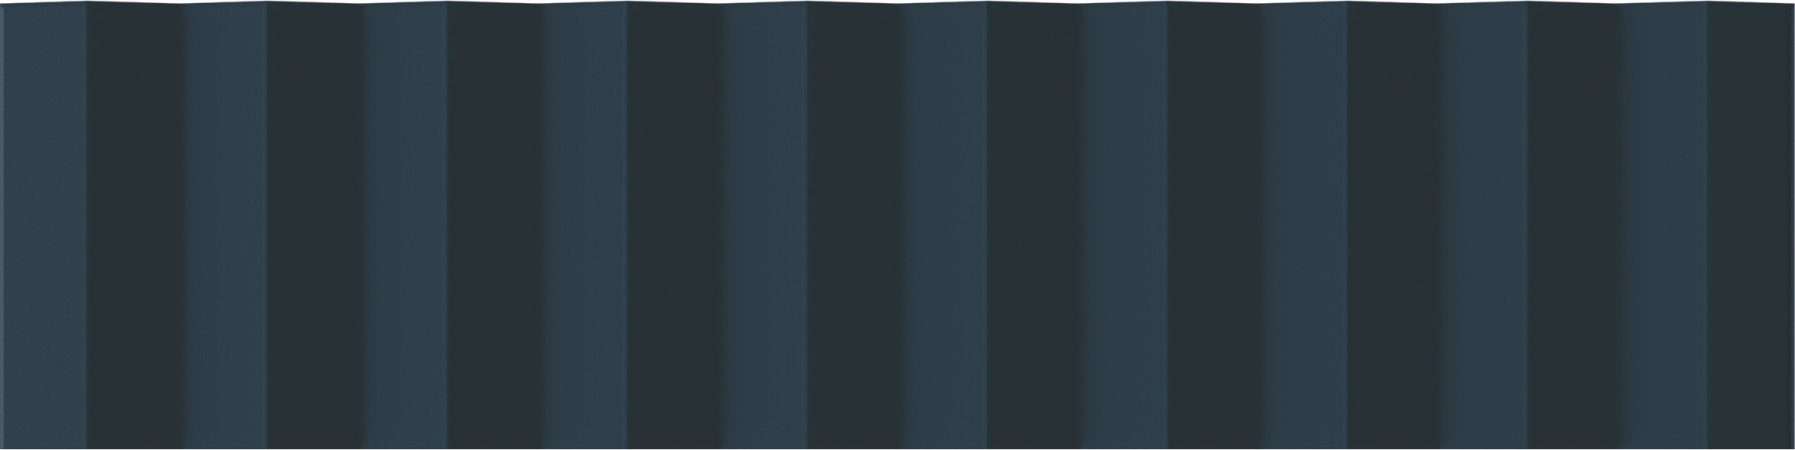 Керамическая плитка Wow Twin Peaks Up Aegean Blue 131548, цвет синий, поверхность матовая 3d (объёмная), под кирпич, 75x300